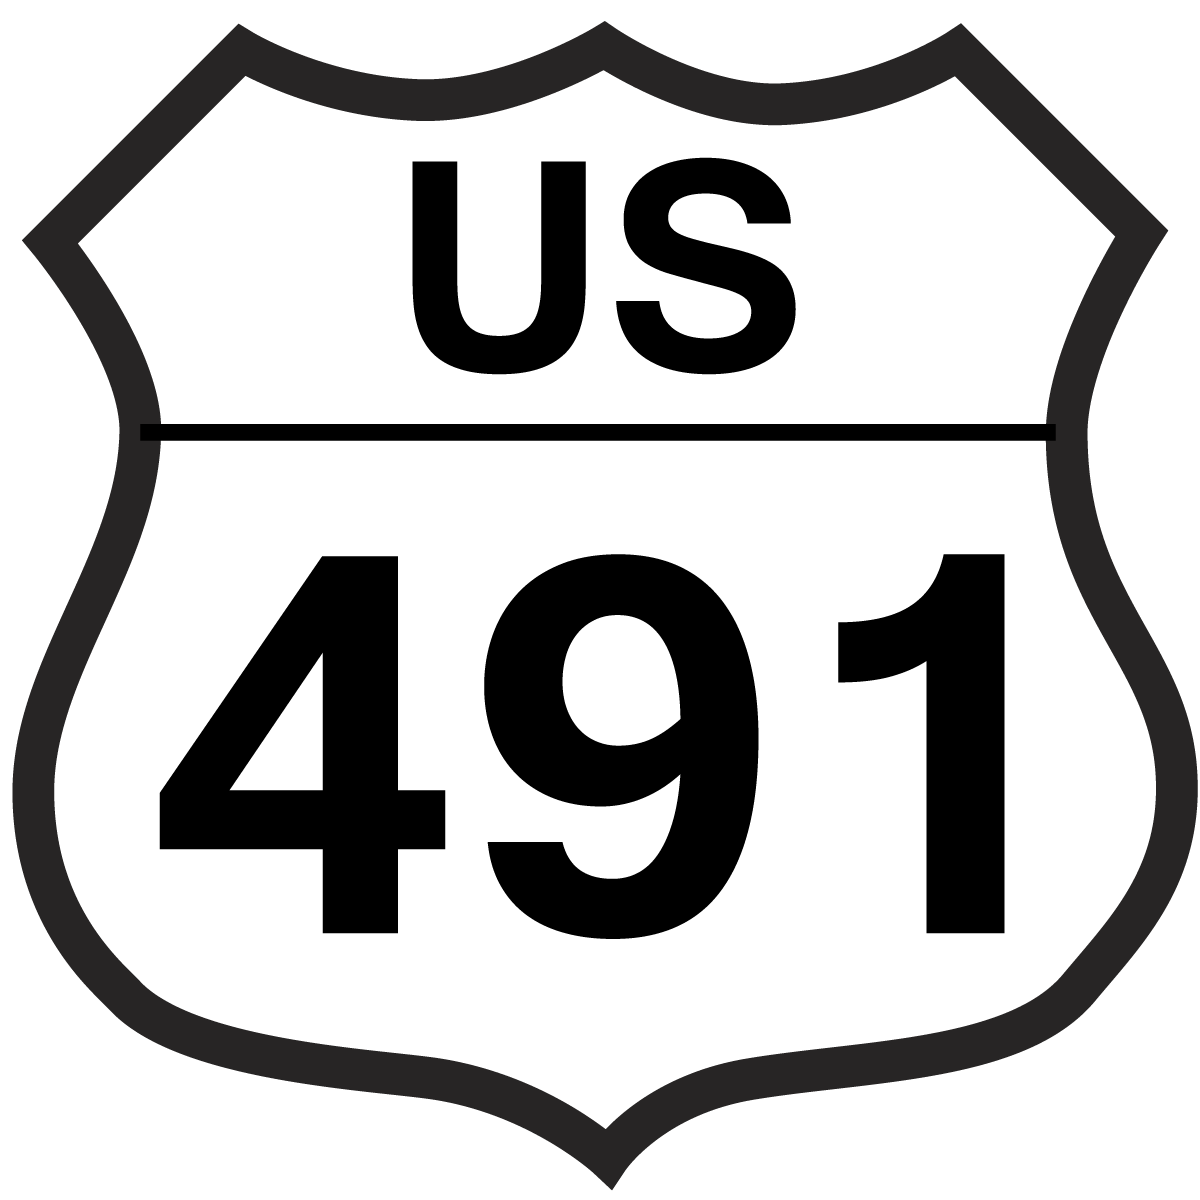 US 491